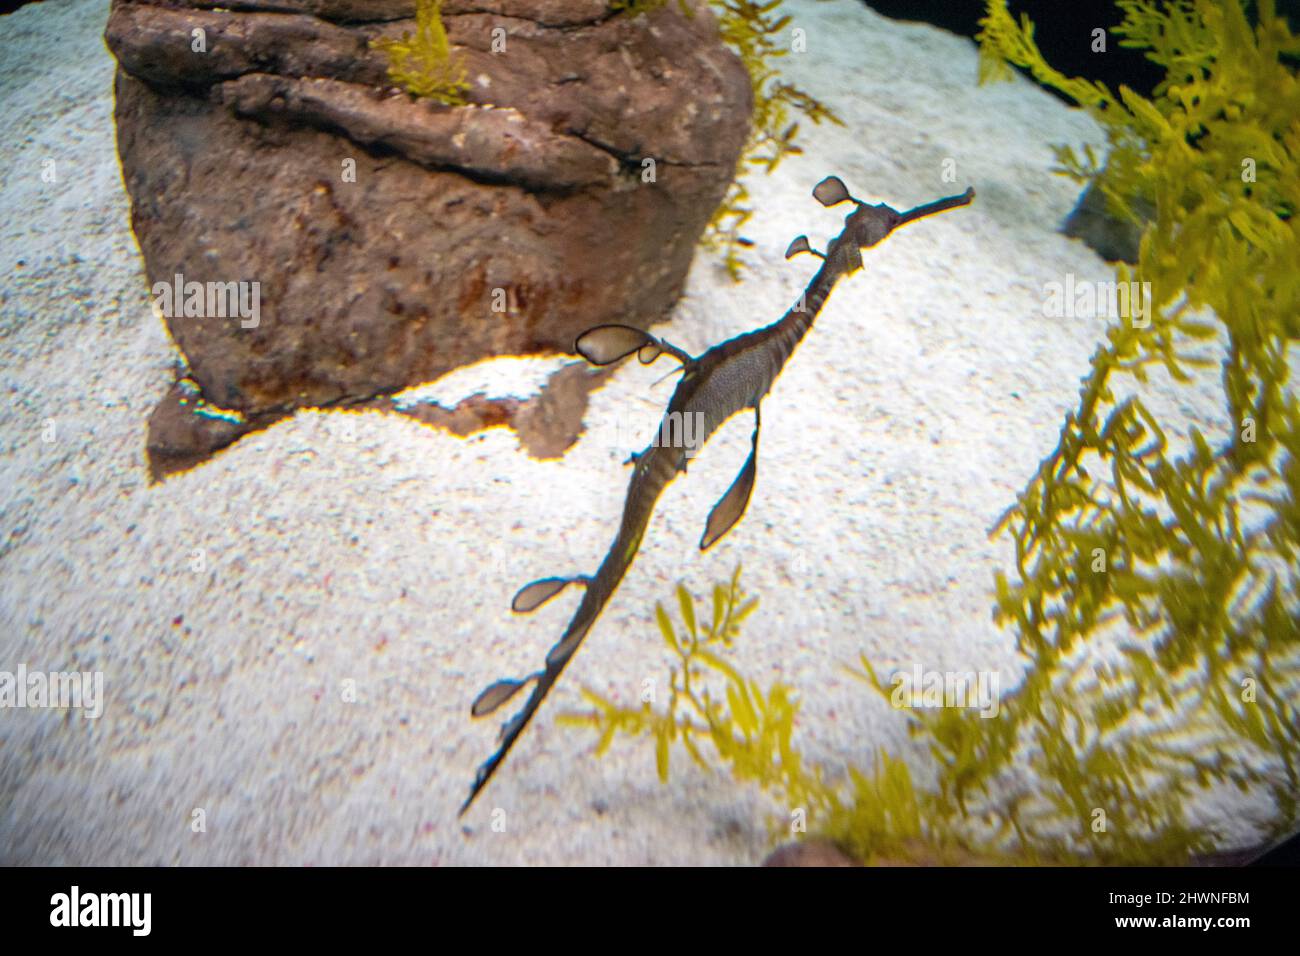 L'adragon commun ou l'adragon weedy (Phyllopteryx taeniolatus) est un poisson marin lié aux hippocampes. Ils ont de petits appendices ressemblant à des feuilles. Banque D'Images